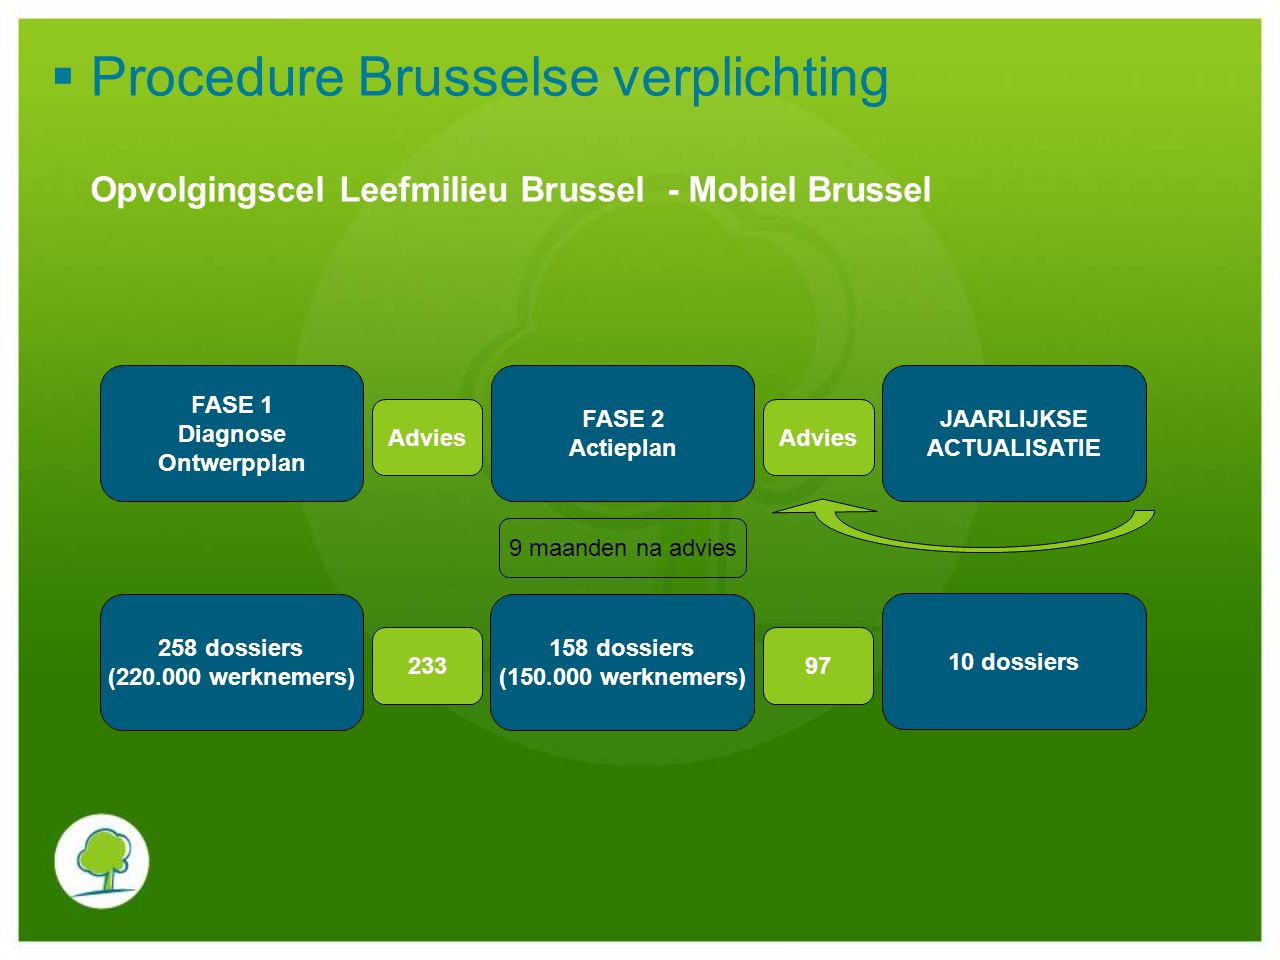 Procedure Brusselse verplichting